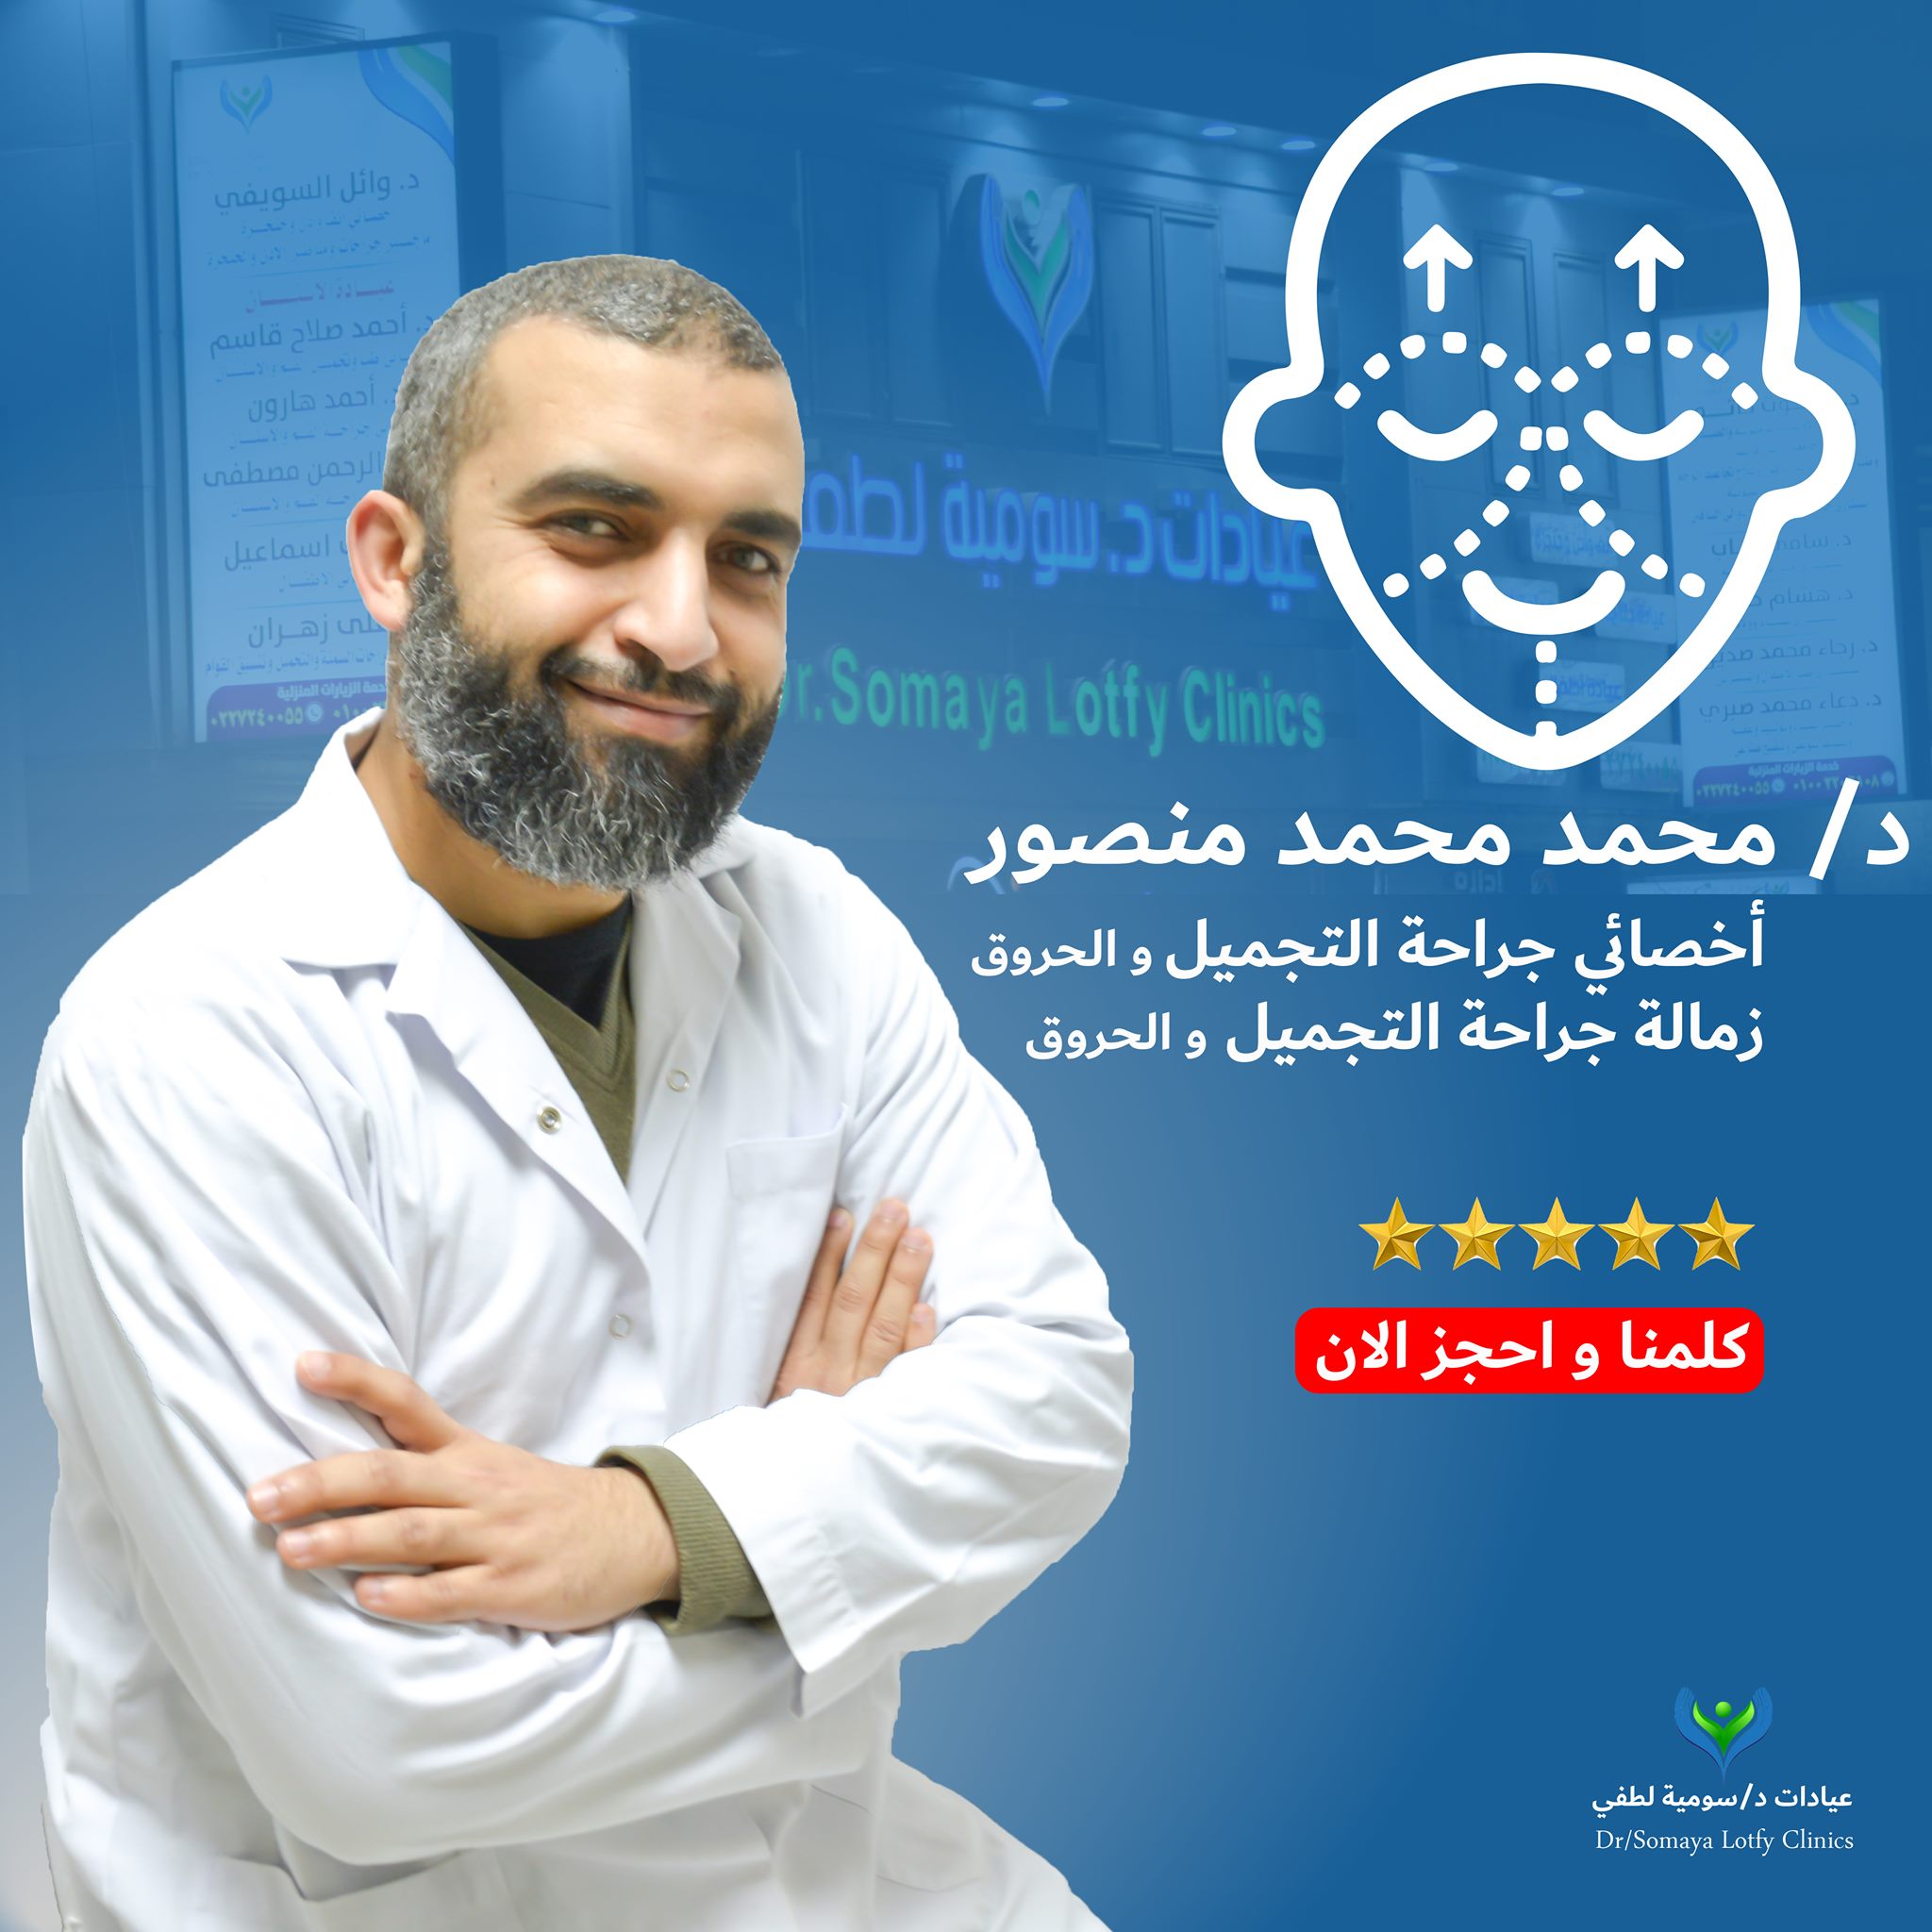 Dr. Mohamed Mohamed Mansour